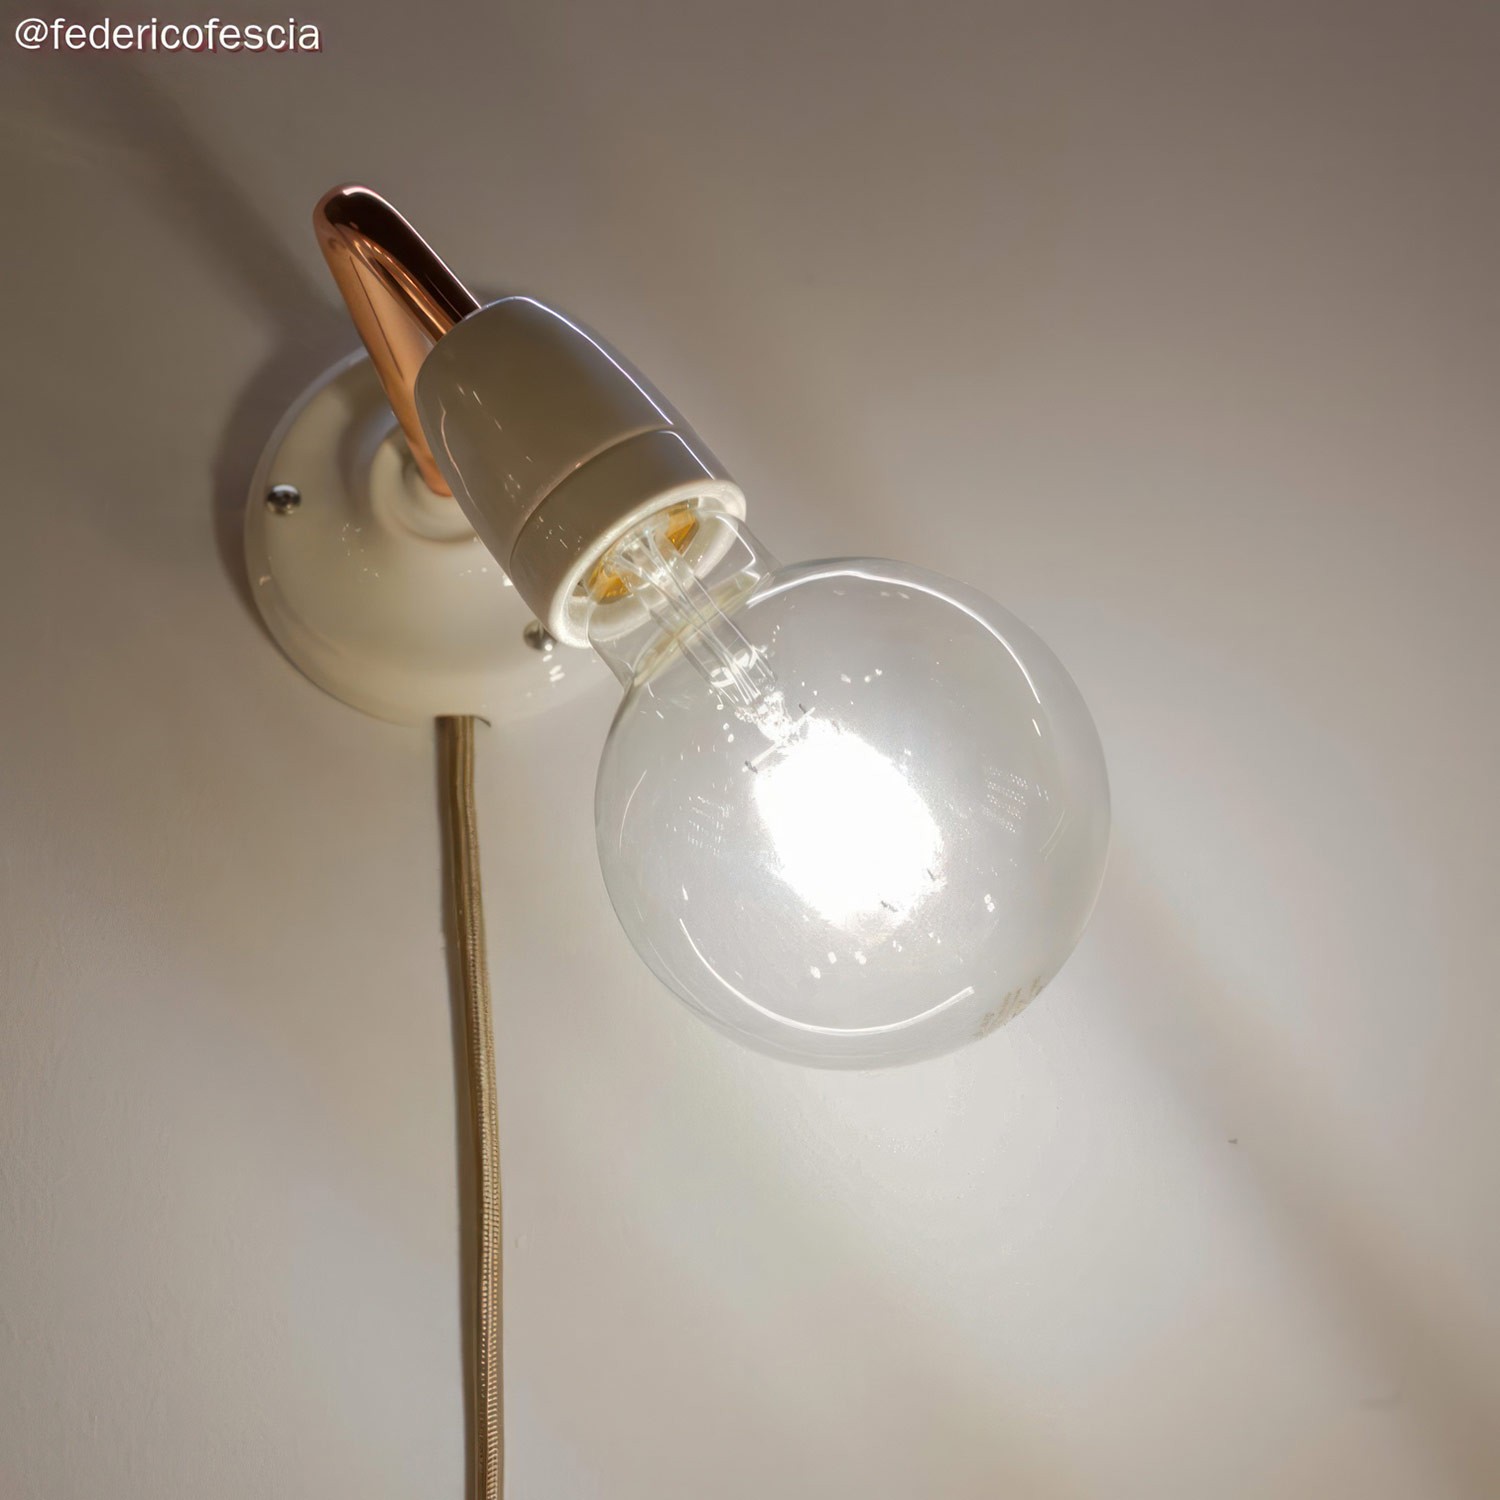 Comment faire pour changer la douille d'une ampoule ?